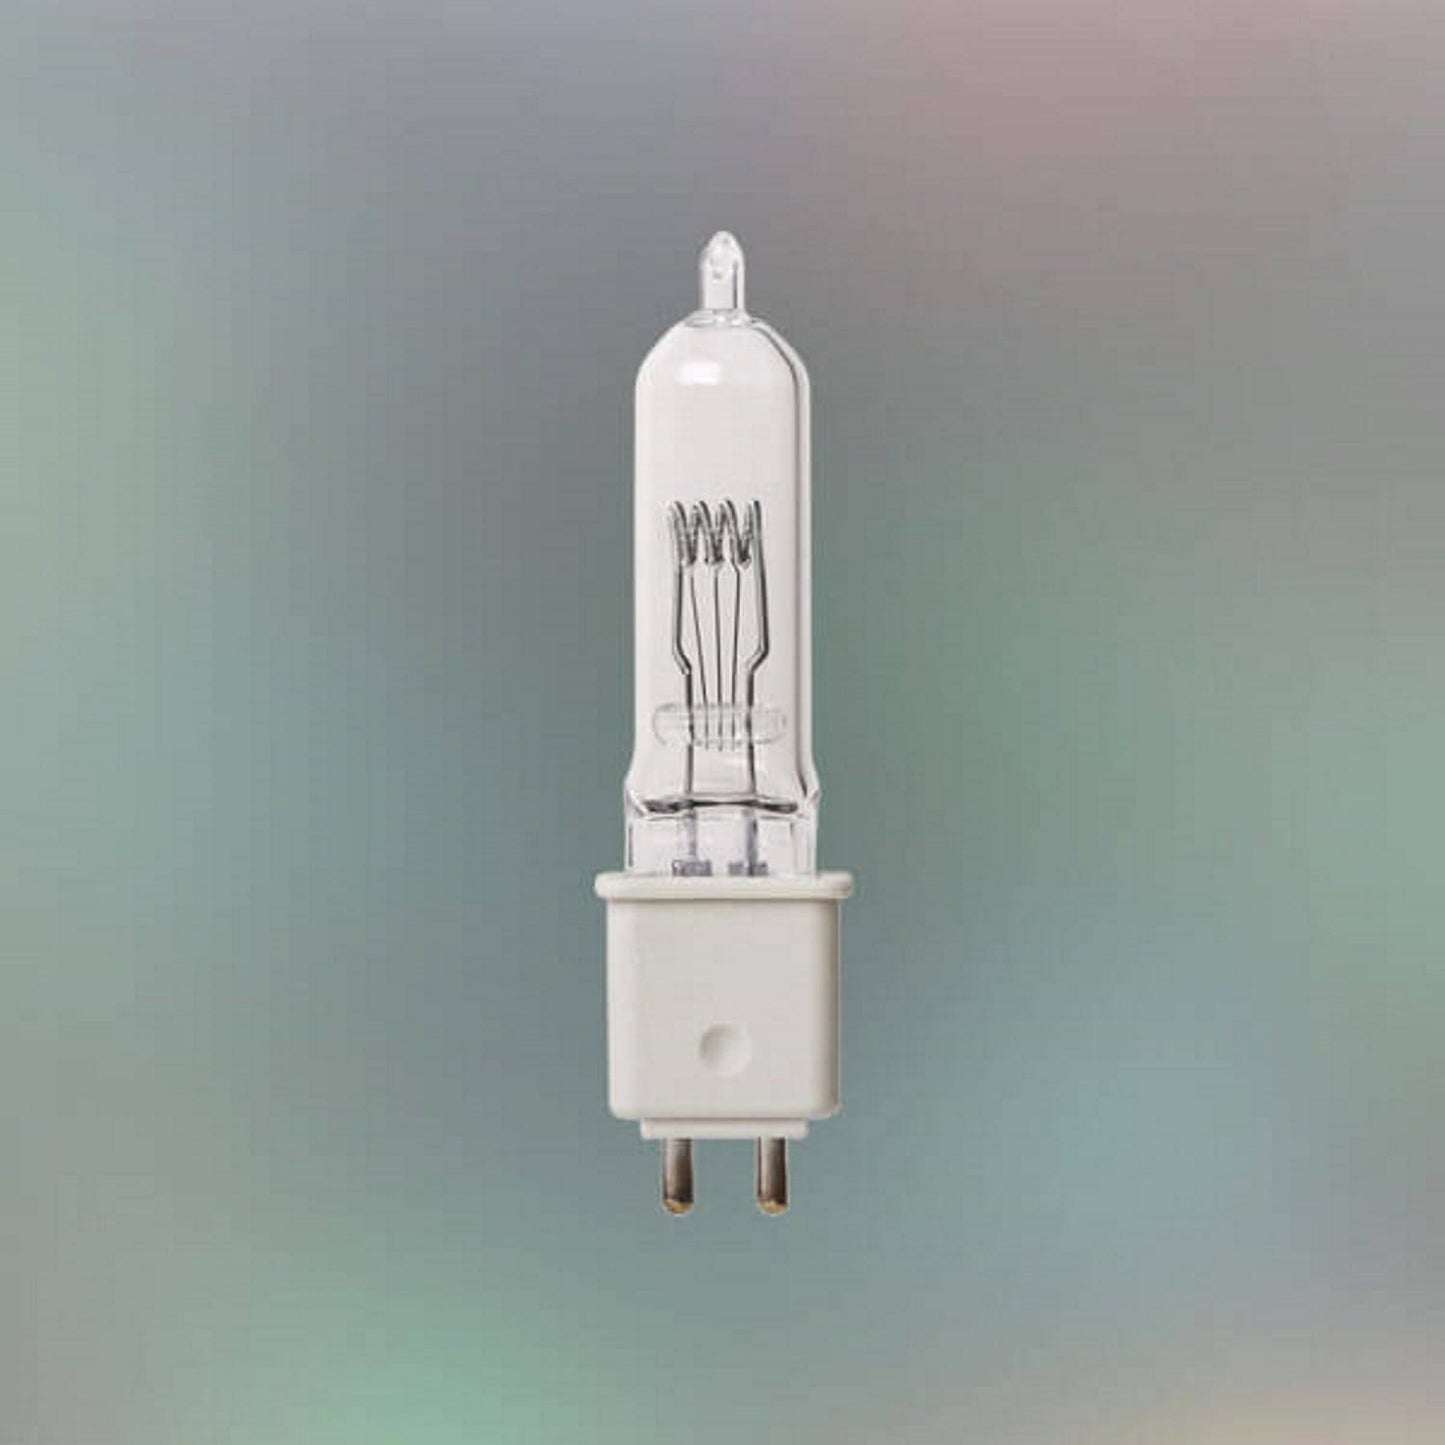 Ushio JCD120V-300W (64514) Halogen Lamp - PSSL ProSound and Stage Lighting